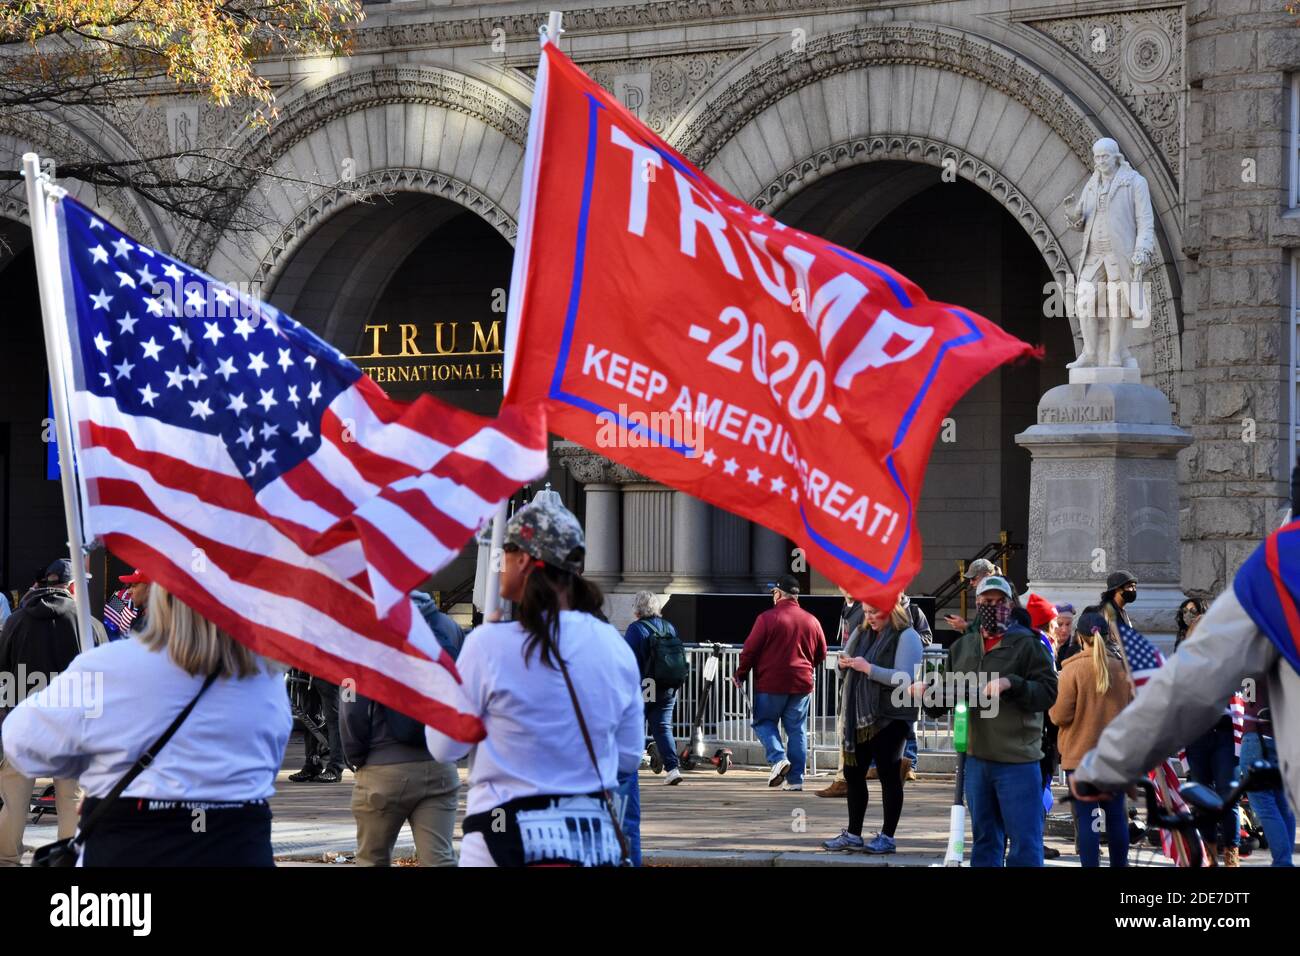 Washington DC. November 2020, 14. Million Maga Marsch. Frauen mit amerikanischer Flagge und „Trump Keep America Great“-Flagge vor dem Trump International Hotel. Stockfoto